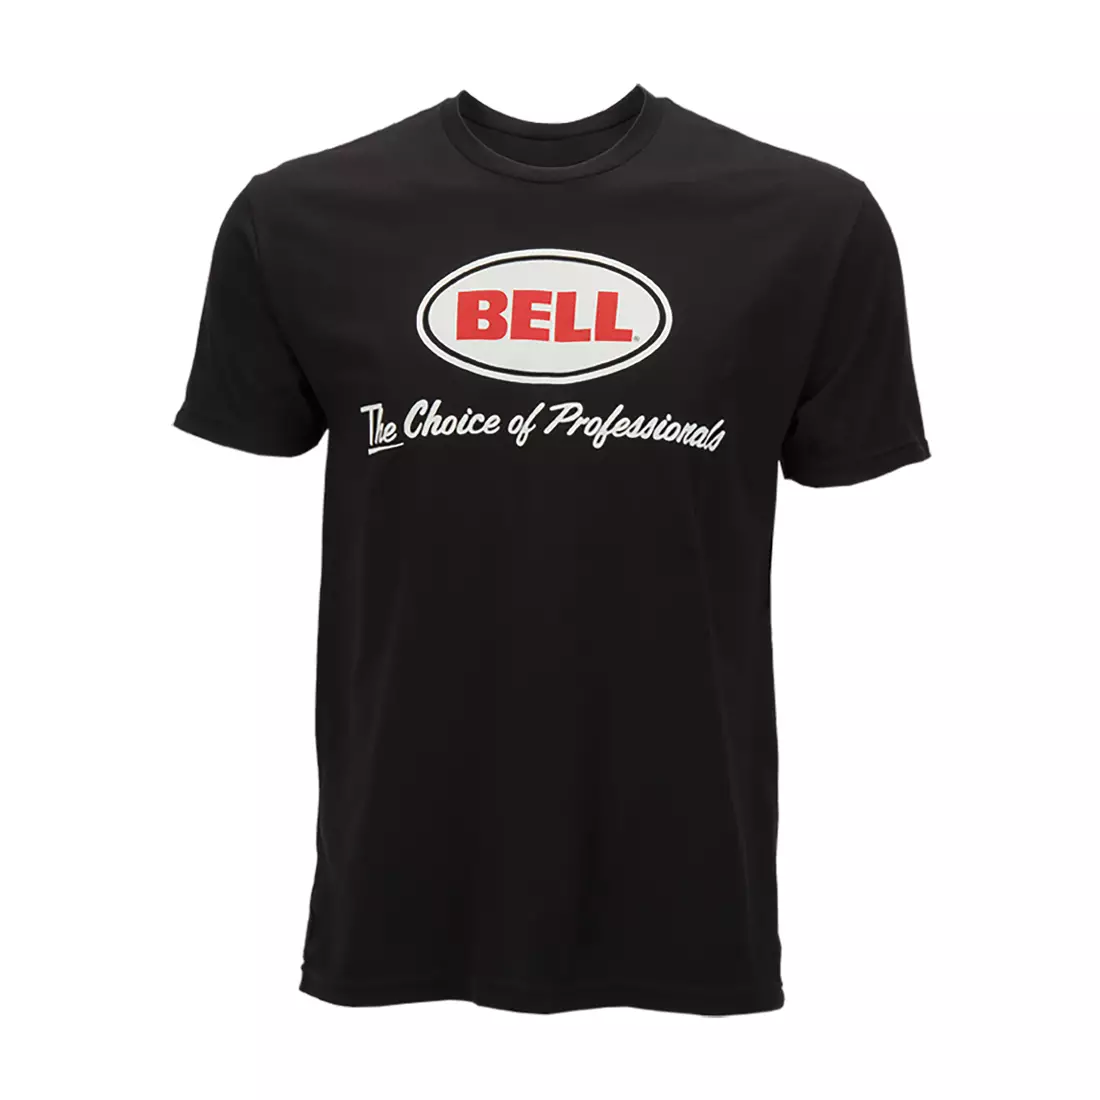 BELL tricou bărbătesc cu mânecă scurtă BASIC CHOICE OF PROS black BEL-7070715